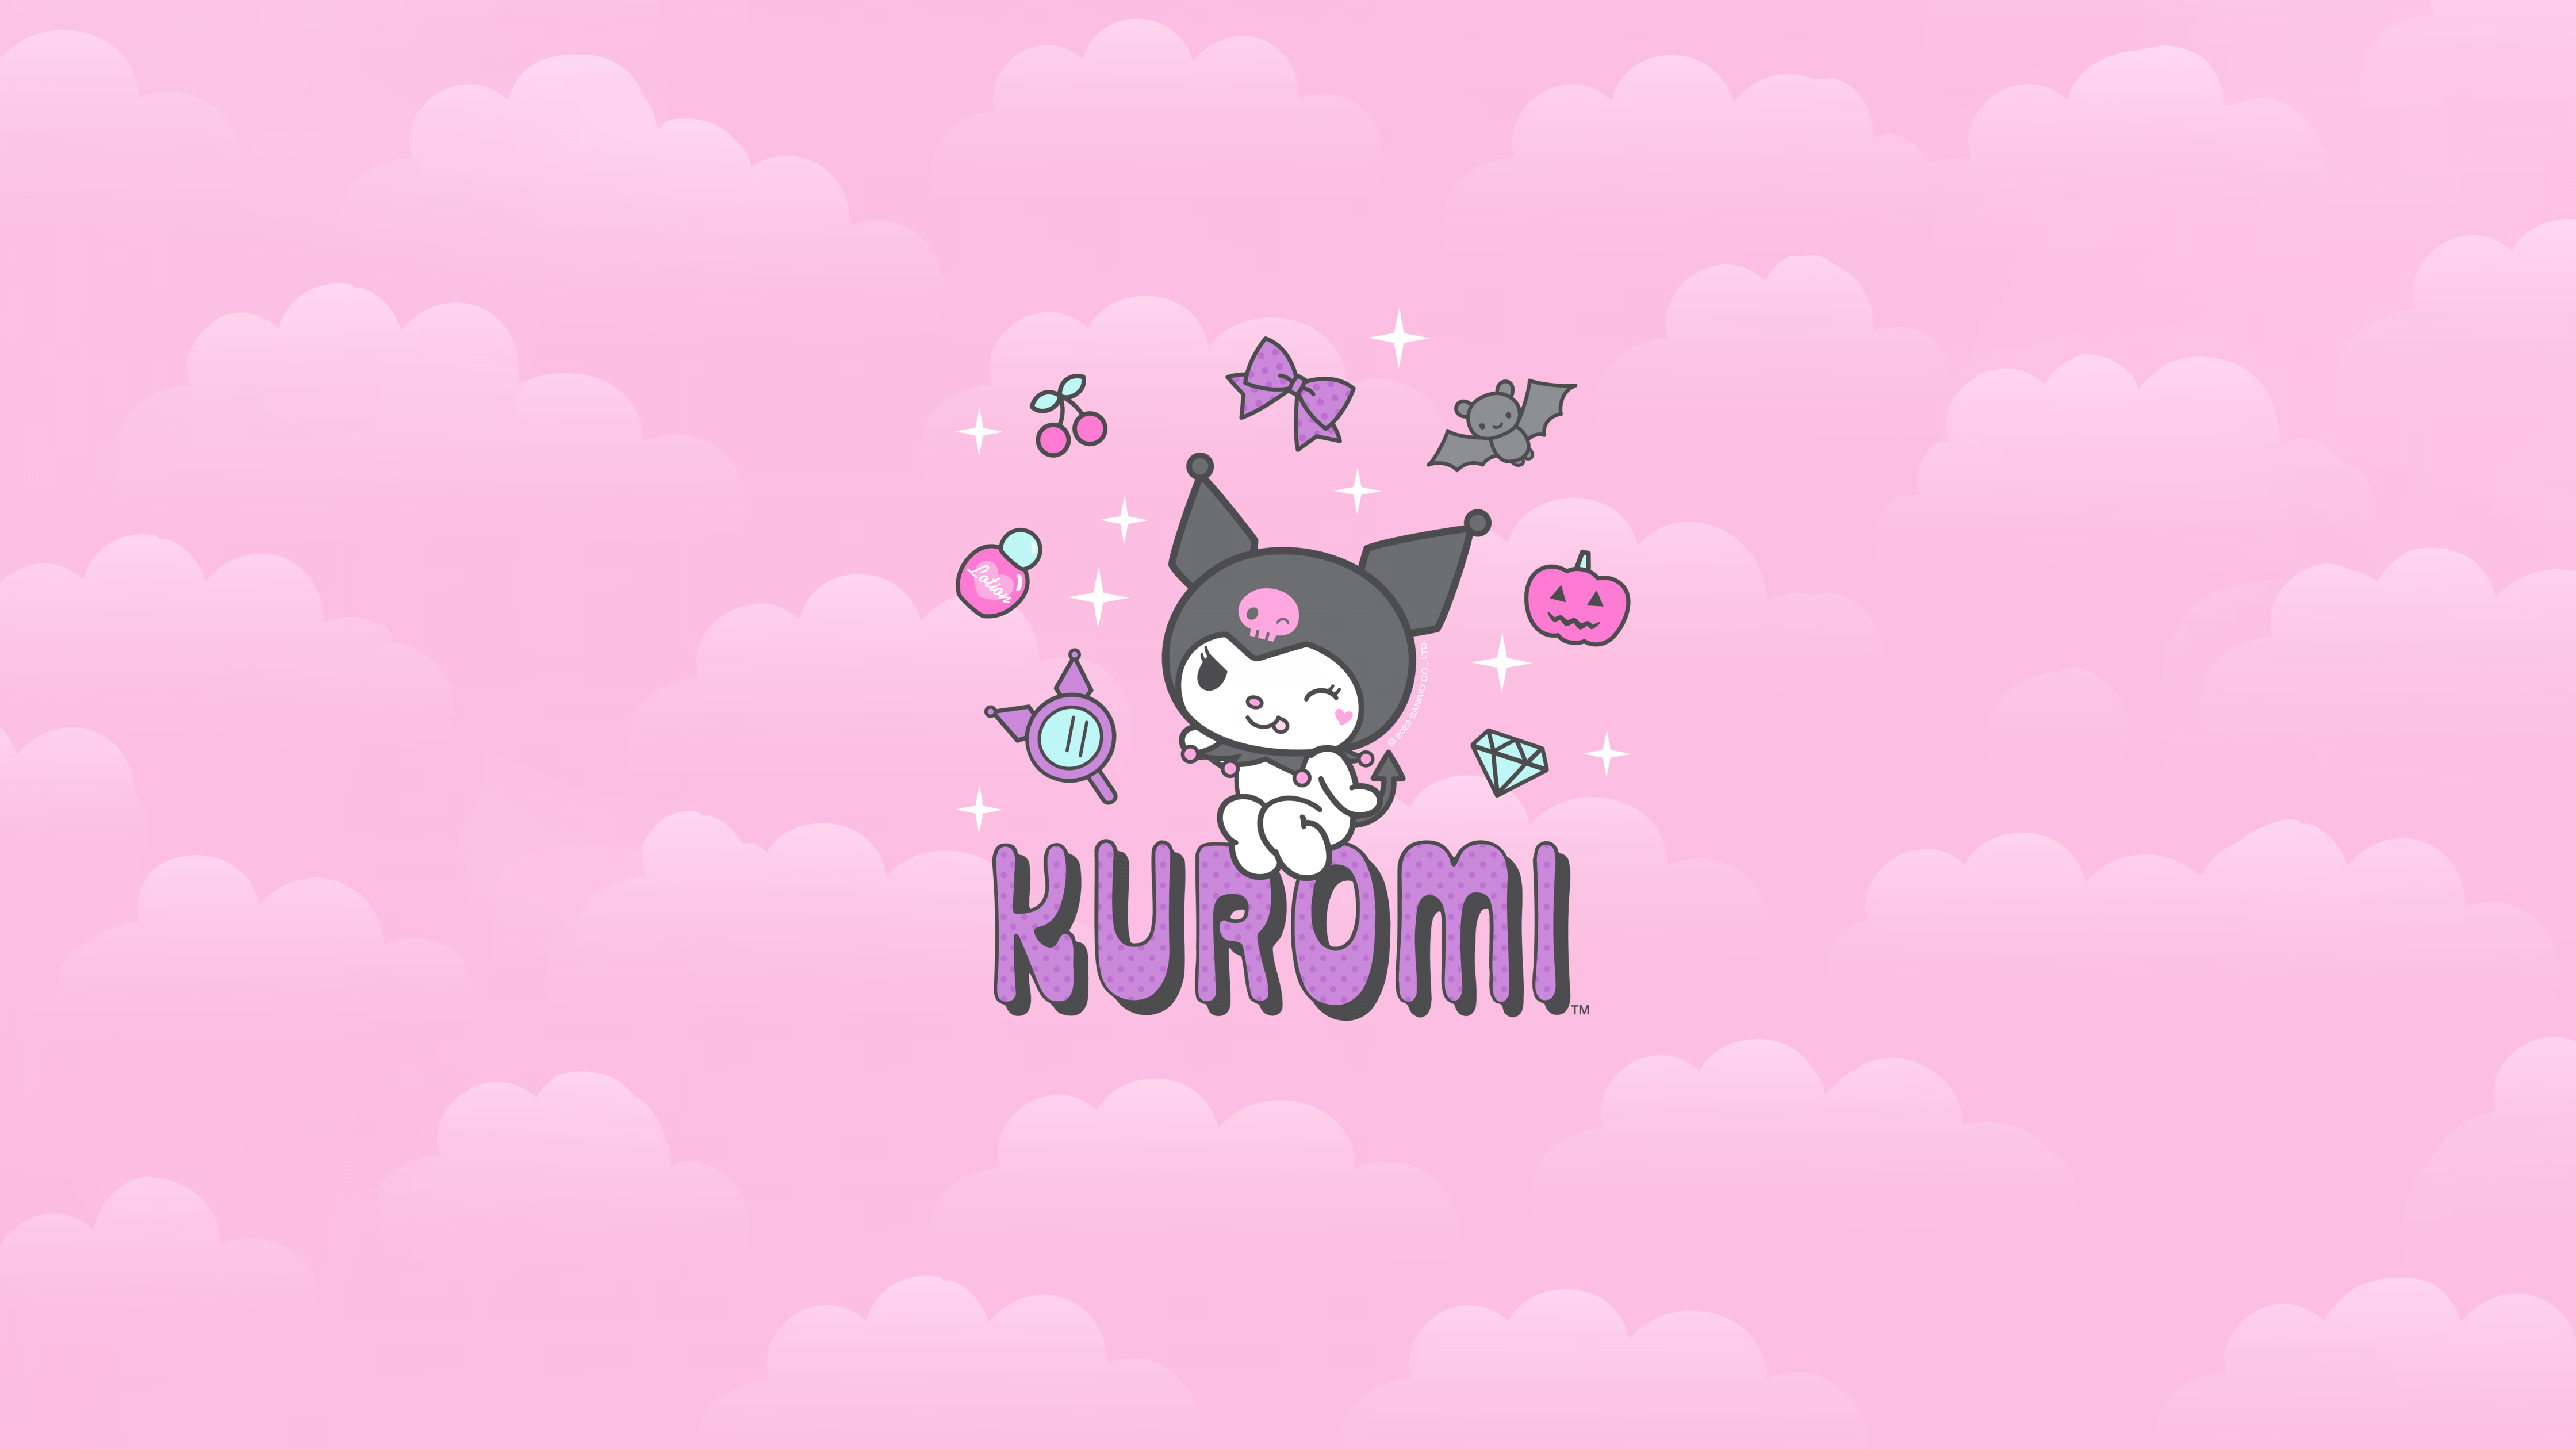 Kuromi Wallpaper Cute: Với bộ hình nền Kuromi này, bạn sẽ được trải nghiệm một thế giới đầy màu sắc và đáng yêu. Thật tuyệt vời khi bạn có thể tận hưởng sự trẻ trung và tươi sáng này trên màn hình của mình.